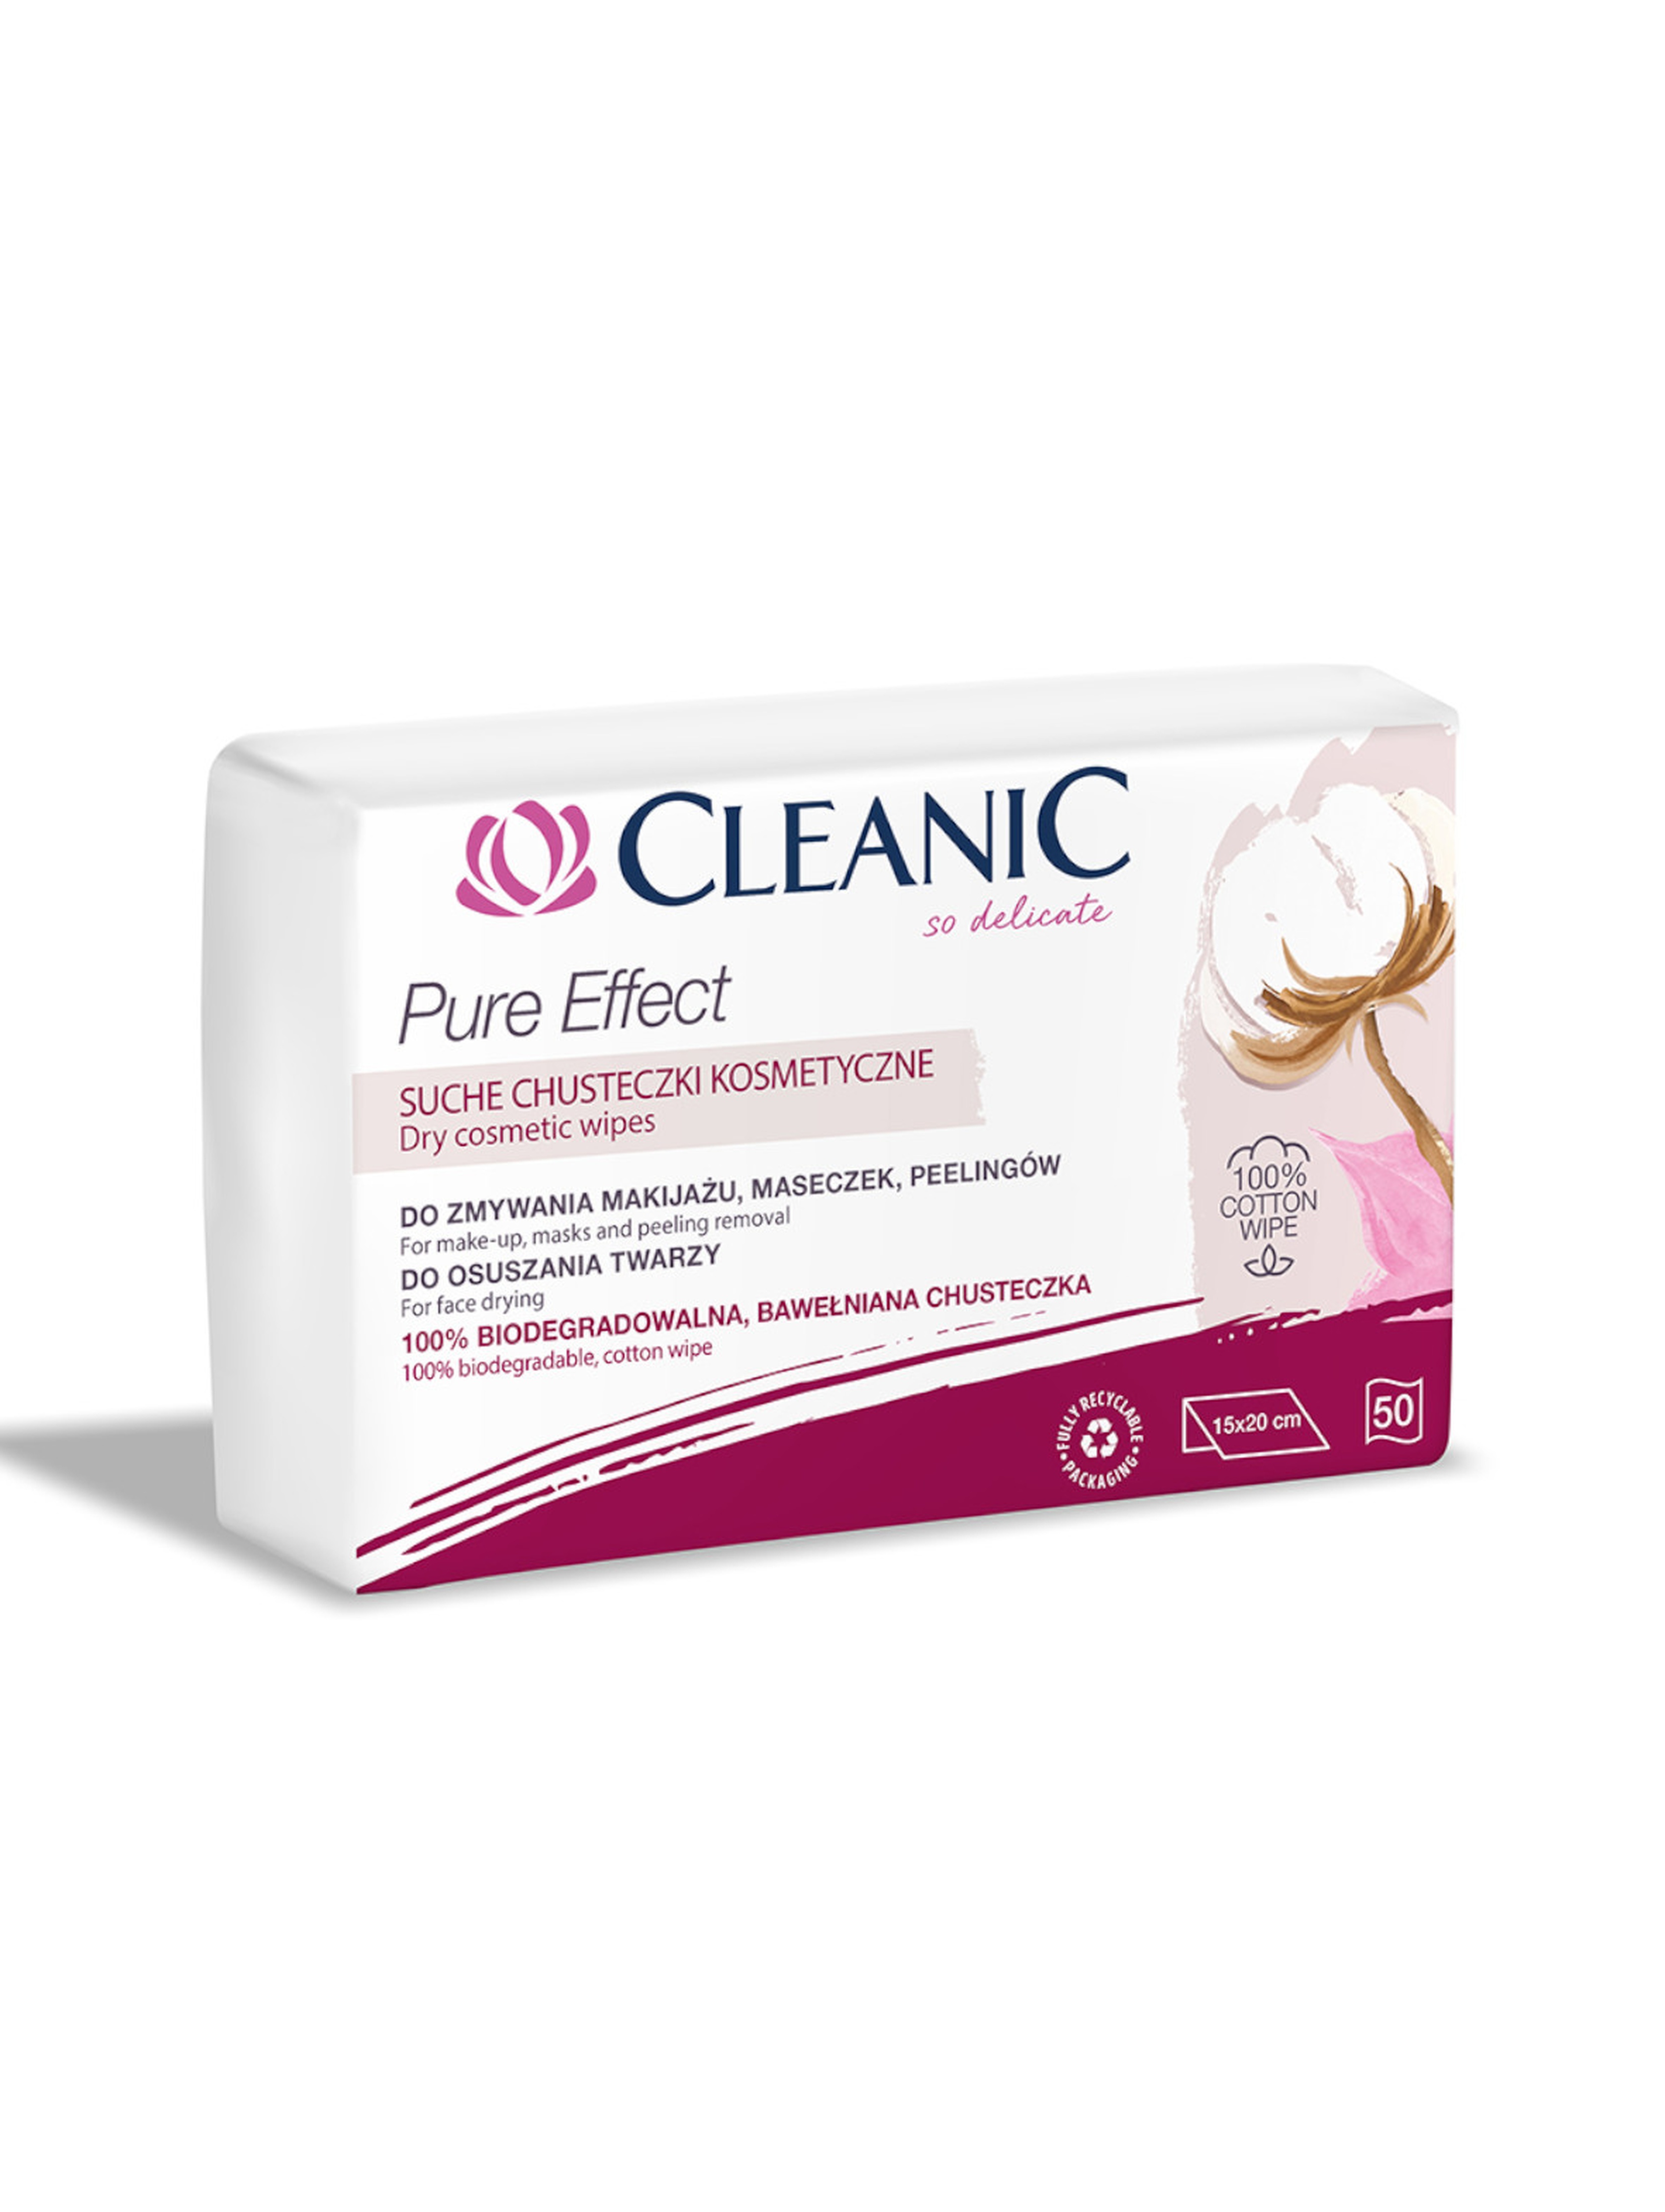 Suche chusteczki do pielęgnacji twarzy Cleanic Pure Effect 50 szt. (150x200)